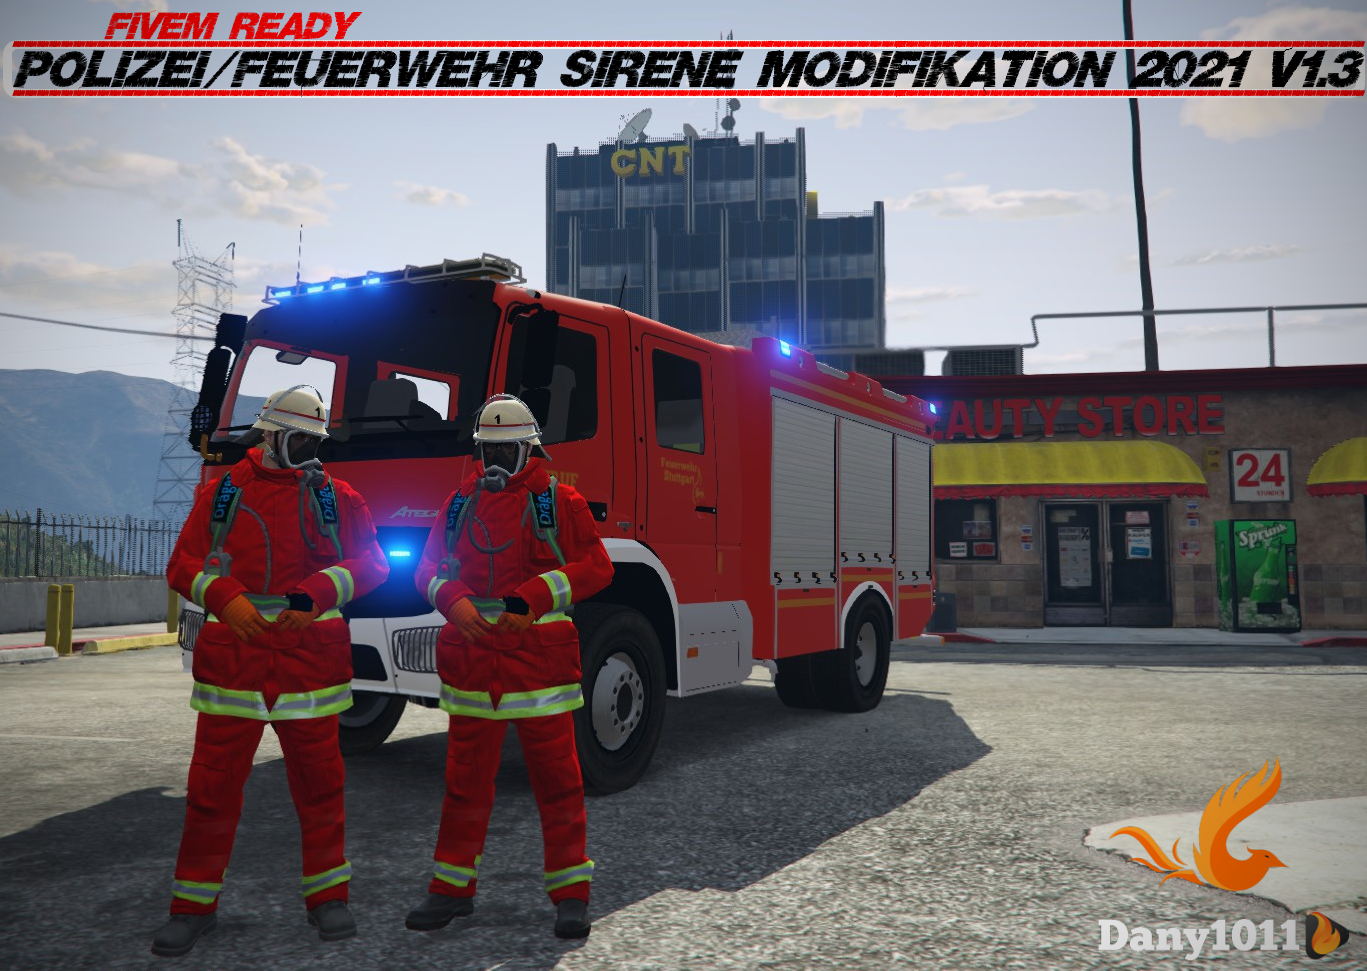 Polizei/Feuerwehr Sirene Modifikation 2021 V1.3.5 